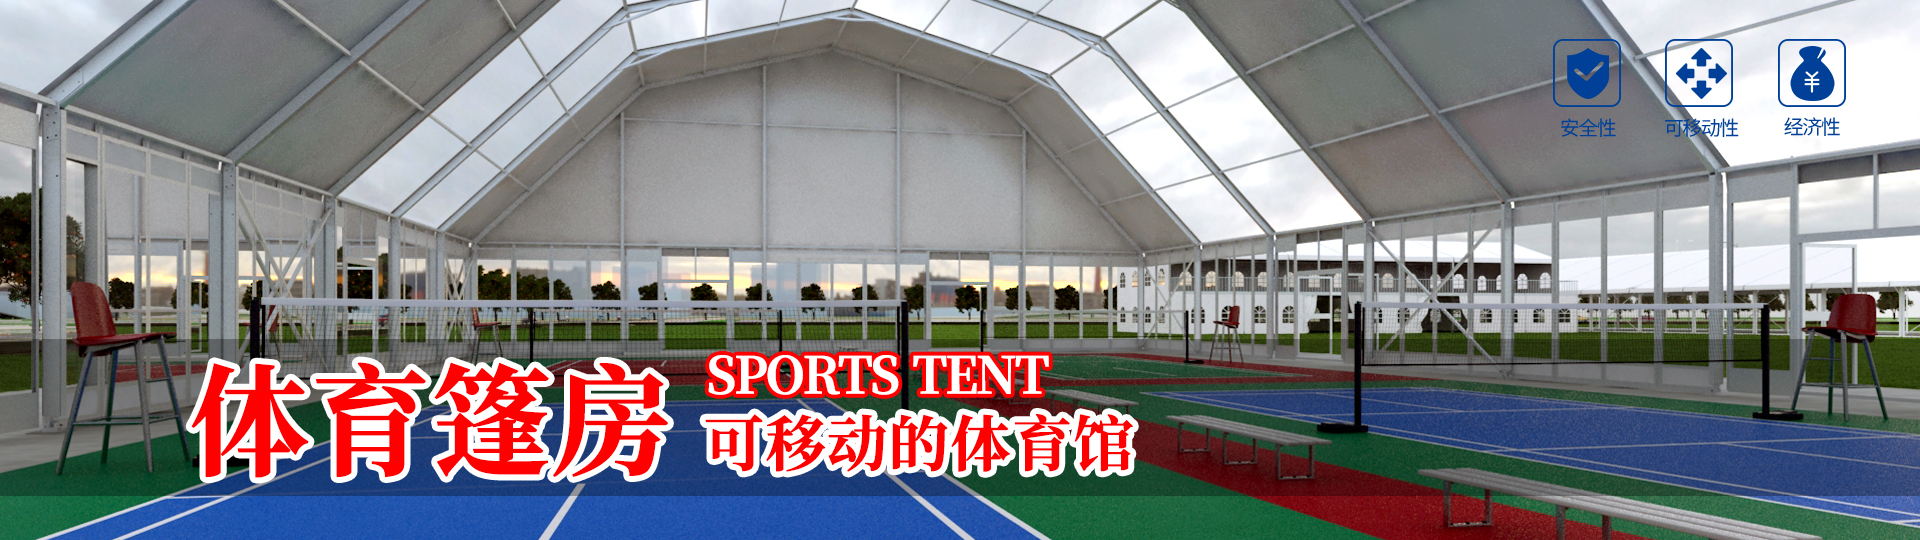 体育篷房 可移动的体育馆